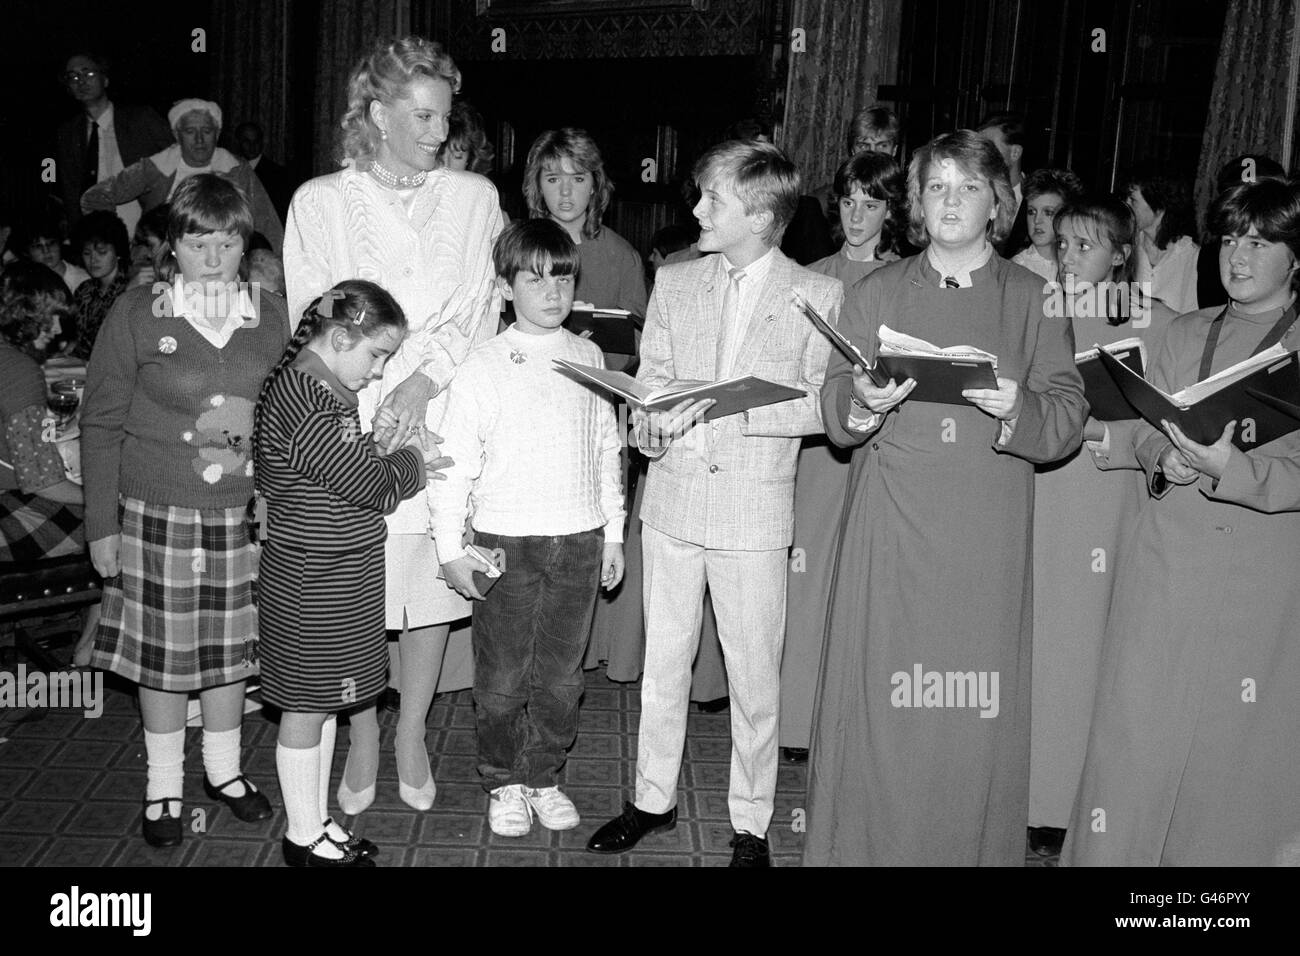 La principessa Michael of Kent canta 'Silent Night' con la stella corale adolescente Aled Jones (al centro), e i membri del coro in una festa di Natale per 100 bambini ciechi e handicappati gestiti dal Royal National Institute for the Blind, presso la House of Commons, Londra. Foto Stock